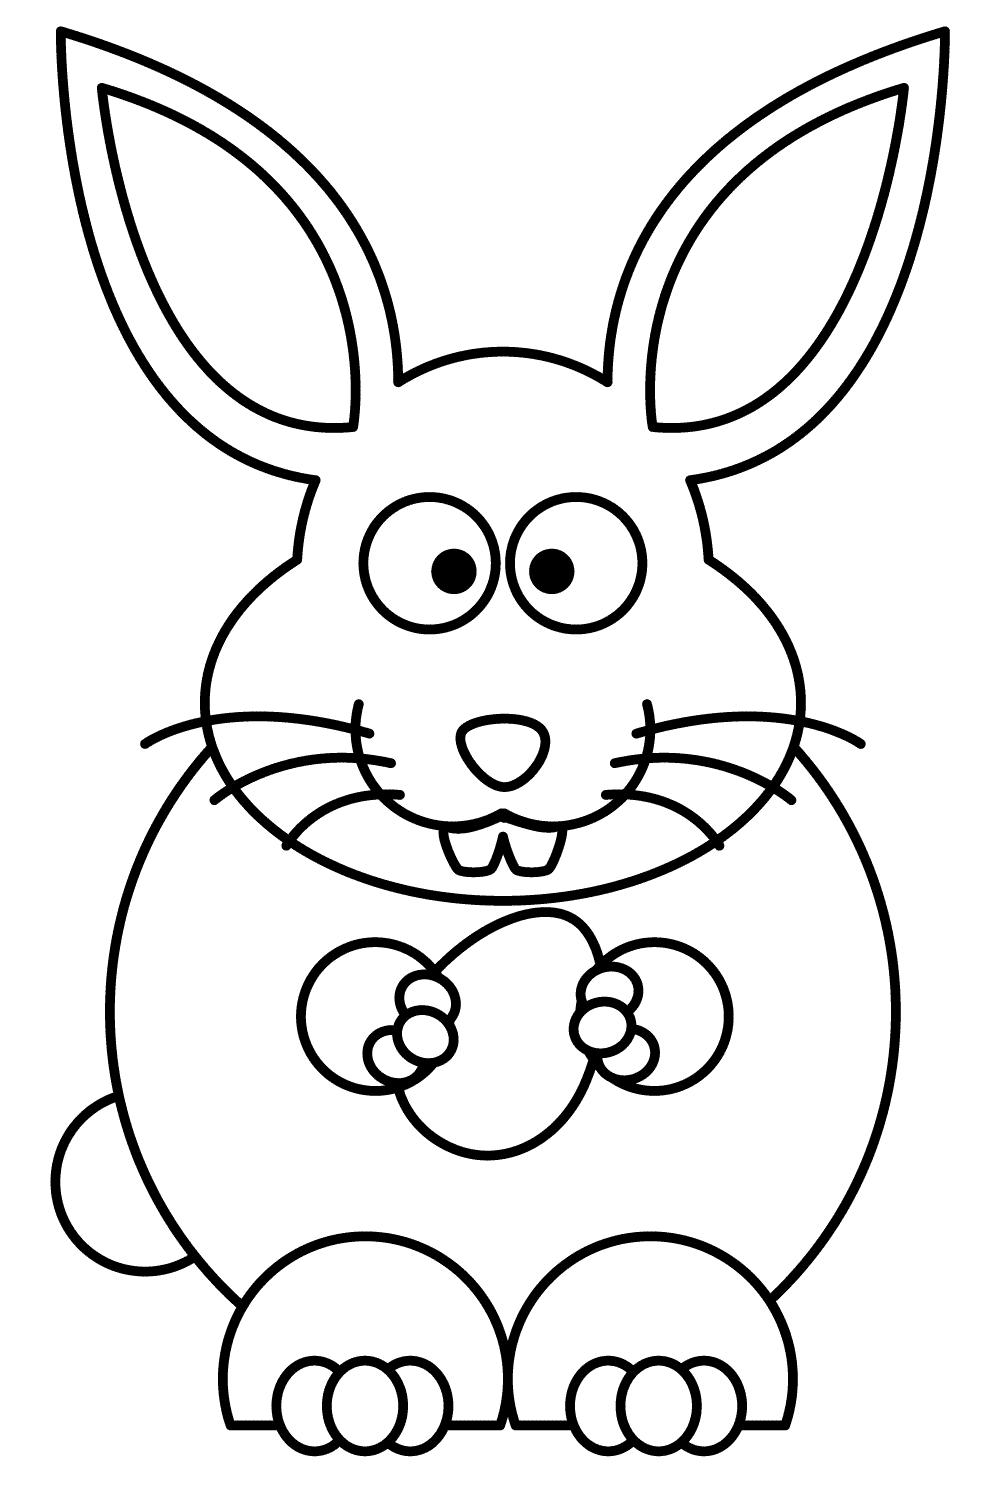 Le lapin de Pâques se prépare à manger un œuf de Bunny